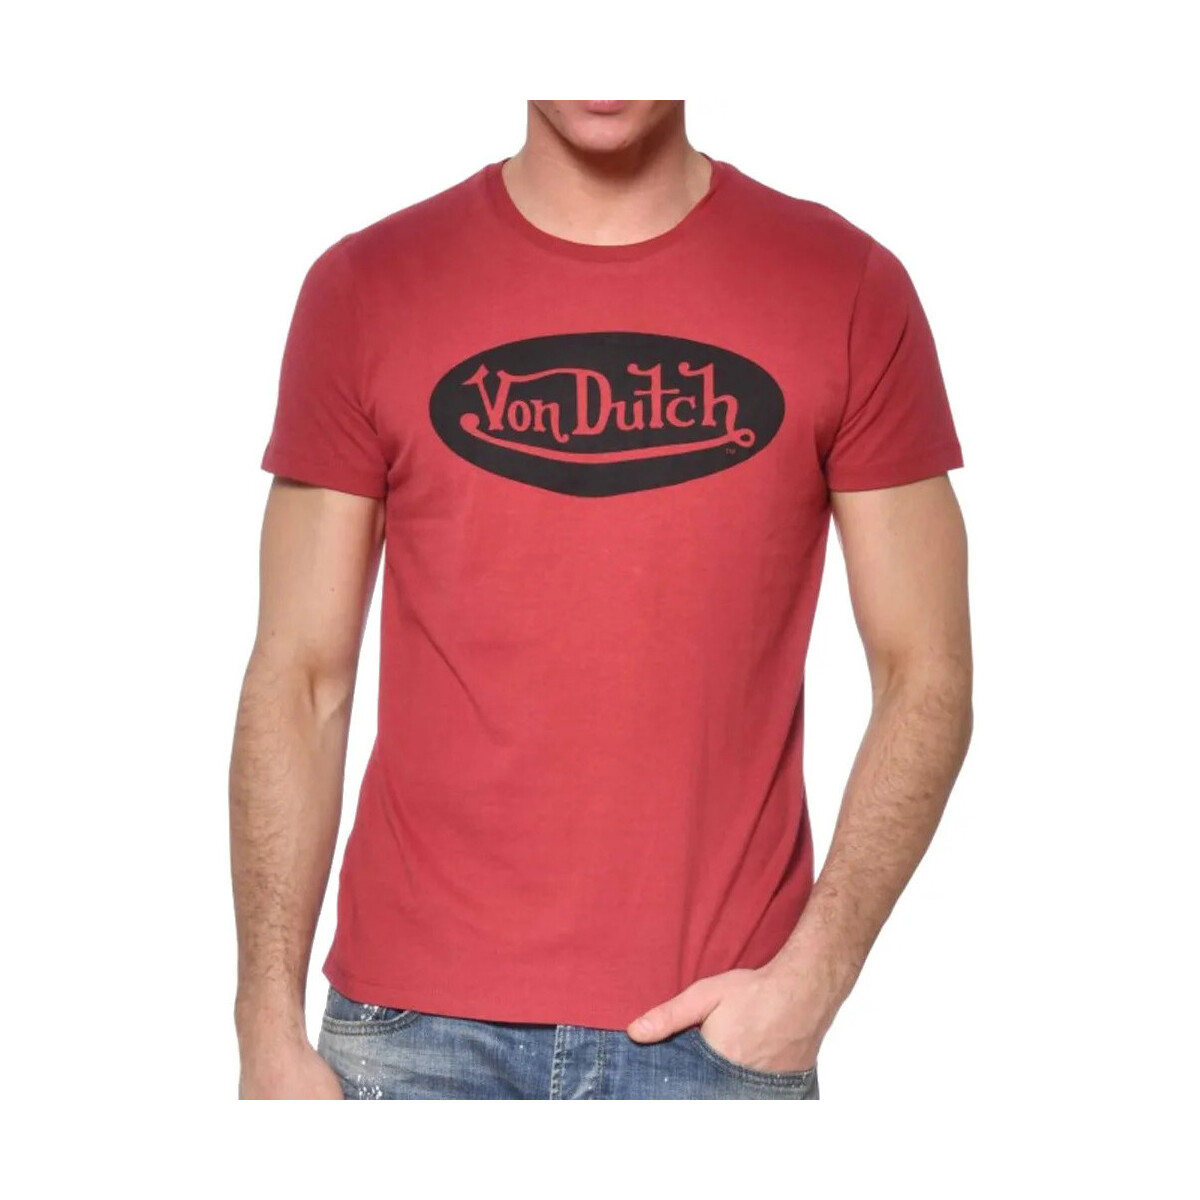 Vêtements Homme T-shirts manches courtes Von Dutch VD/TSC/FRONT Rouge